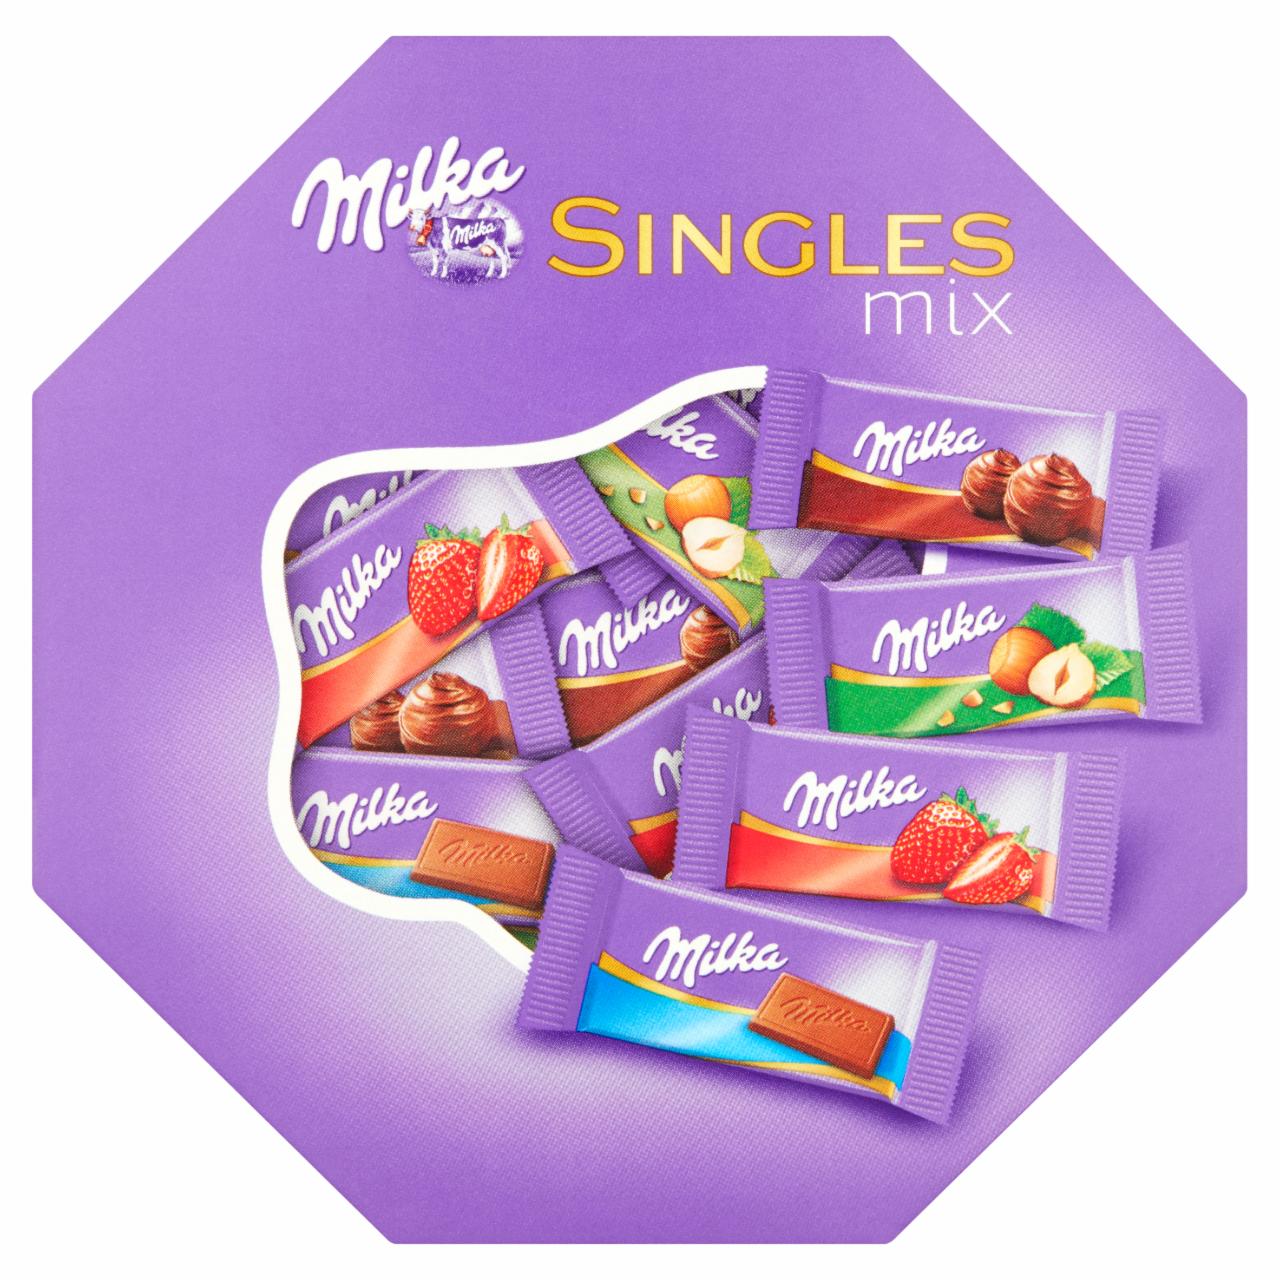 Zdjęcia - Milka Singles Mix Mieszanka czekoladek mlecznych 138 g